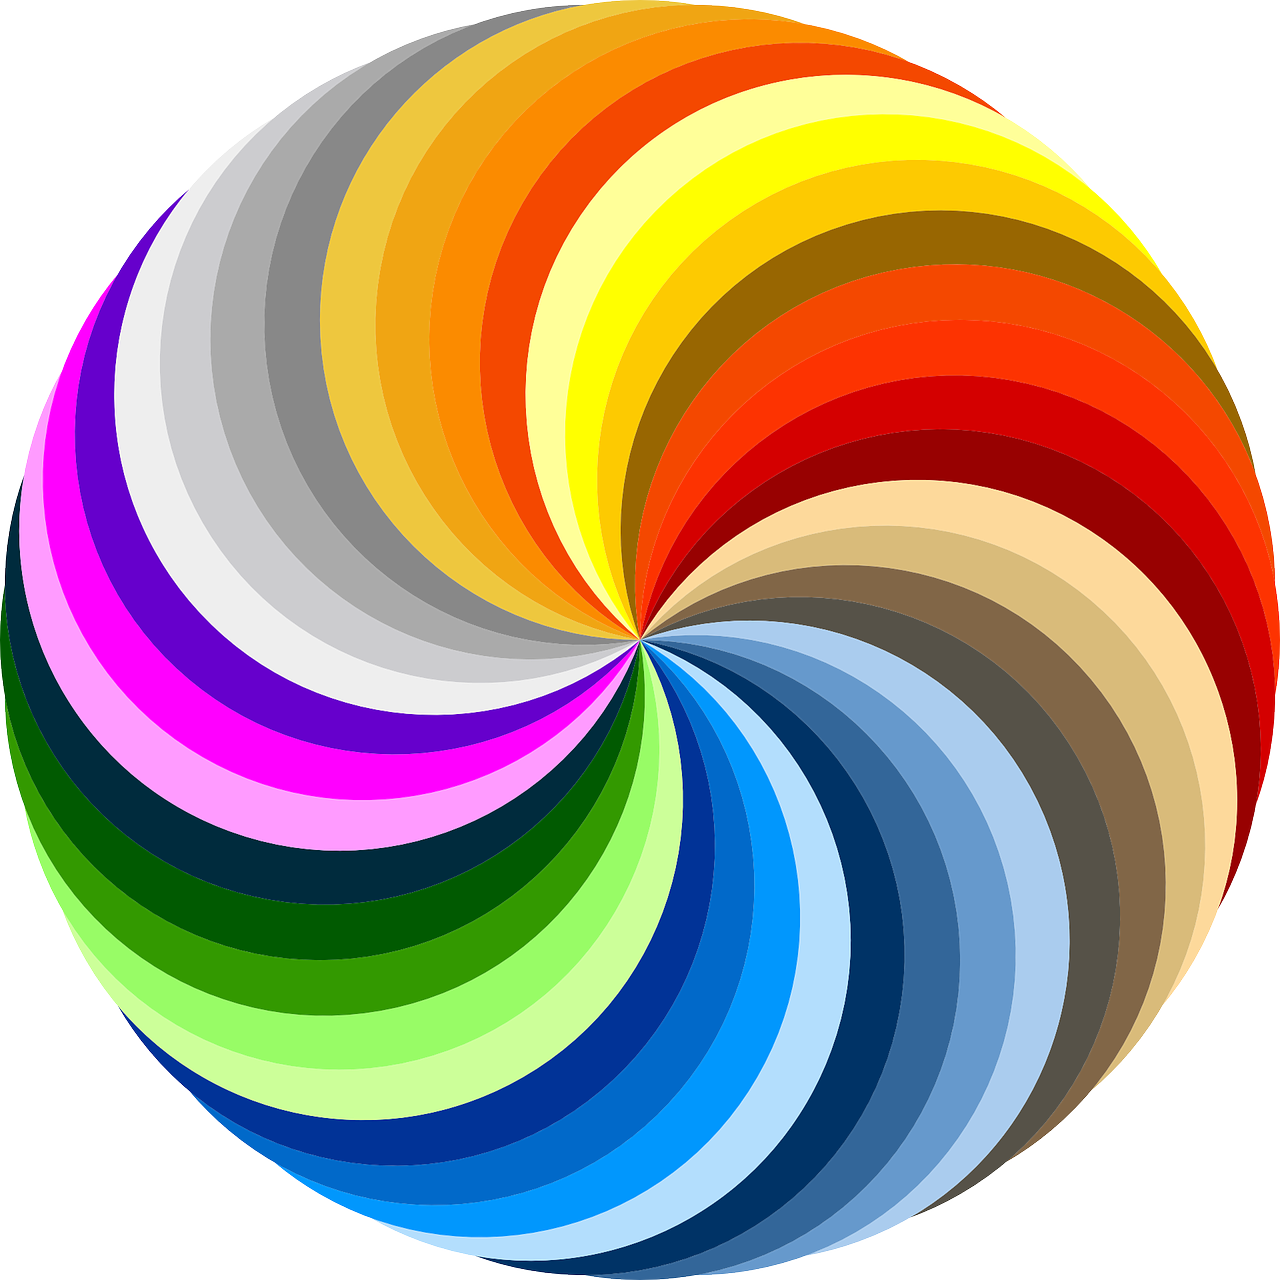 Rainbow Of Colors Clip Art At Clker Com Vector Clip A - vrogue.co